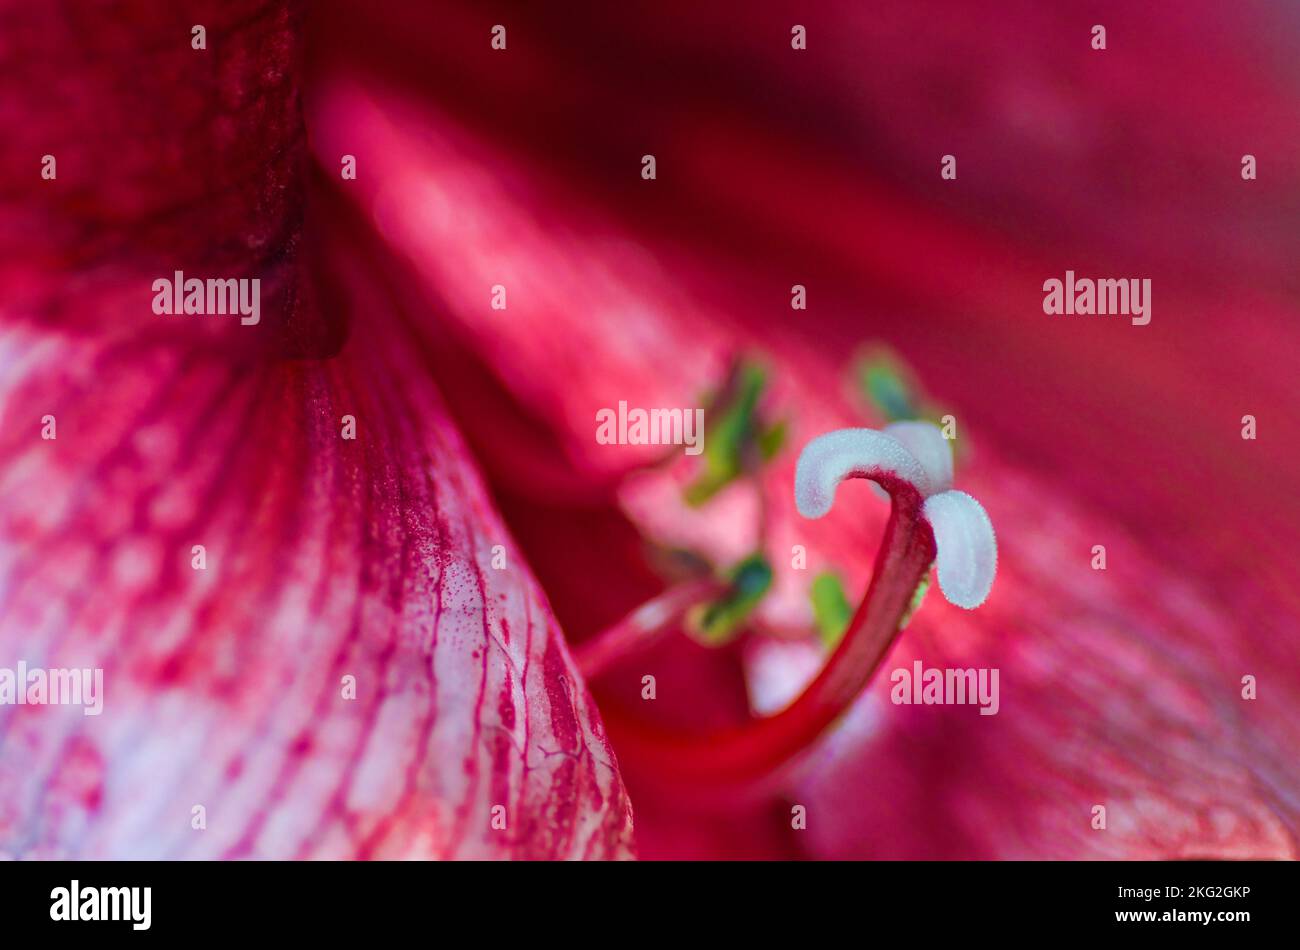 Gros plan d'une fleur d'Amaryllis rouge avec l'étamine et le pistil et le style rouge et avec la stigmatisation blanche en foyer. Banque D'Images